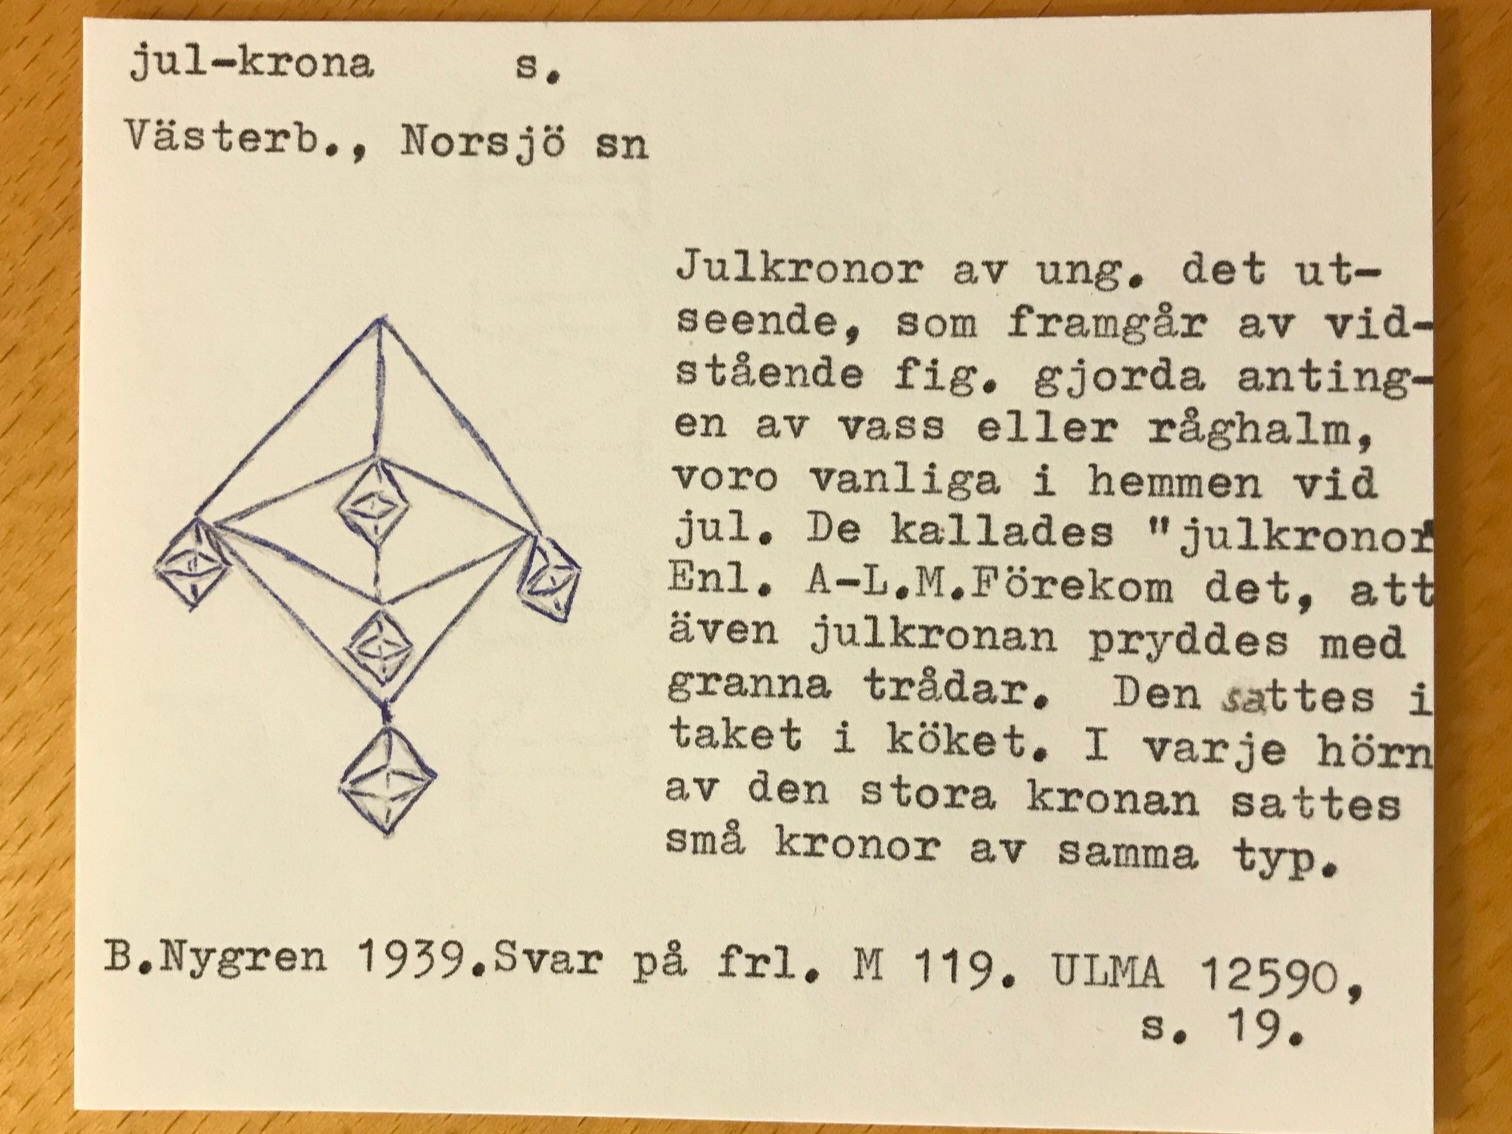 Teckning på julkrona från Norsjö, uppbyggd av oktaedrar